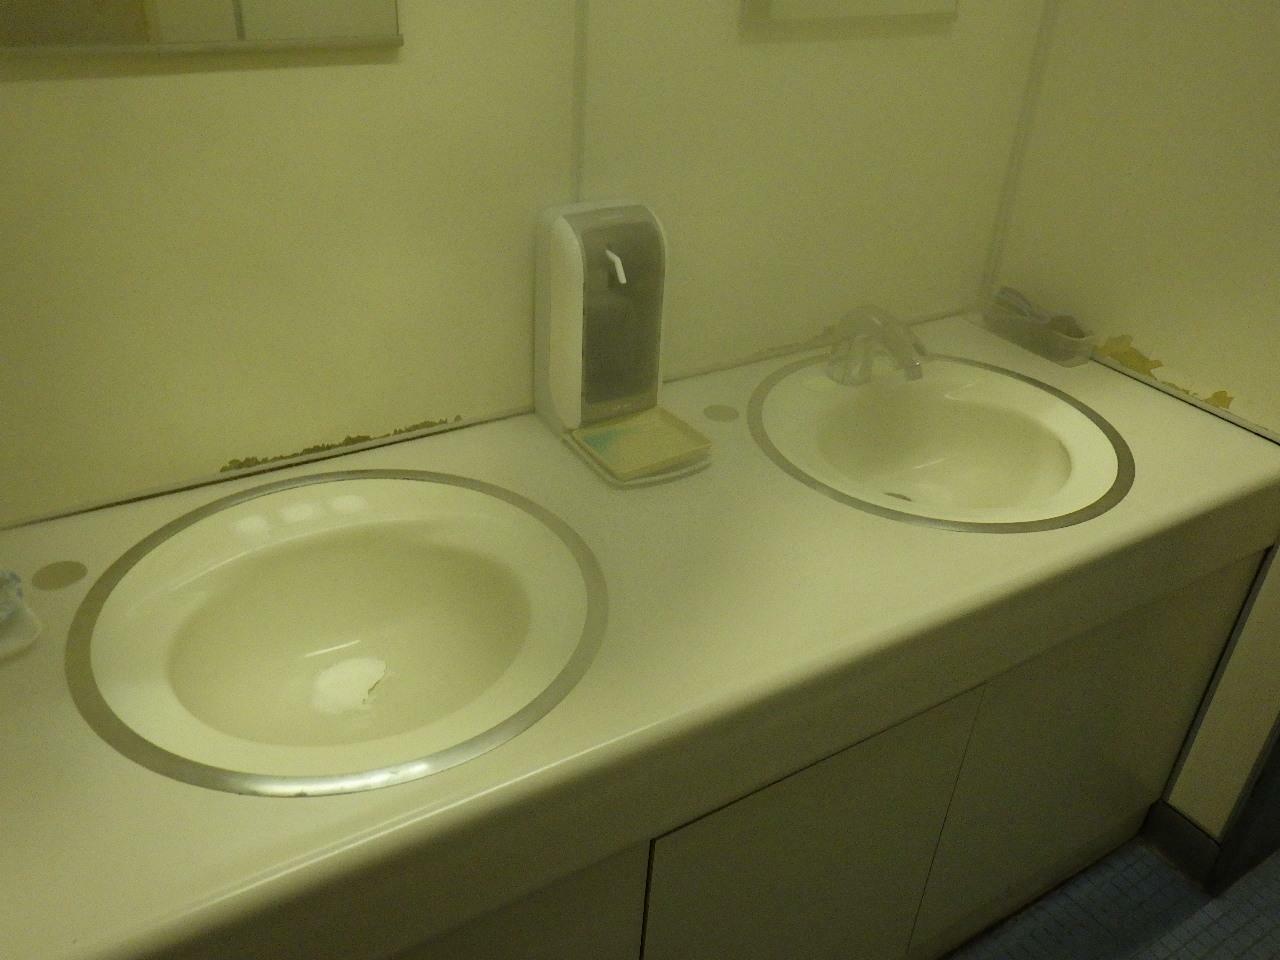 夕張市役所の洗面所。経費節約のために水栓の一方を無効化している模様。筆者は全国200以上の自治体の役所に訪れたがさすがにこのようなケースは見たことがなく、夕張の窮状を示すようで印象深い。